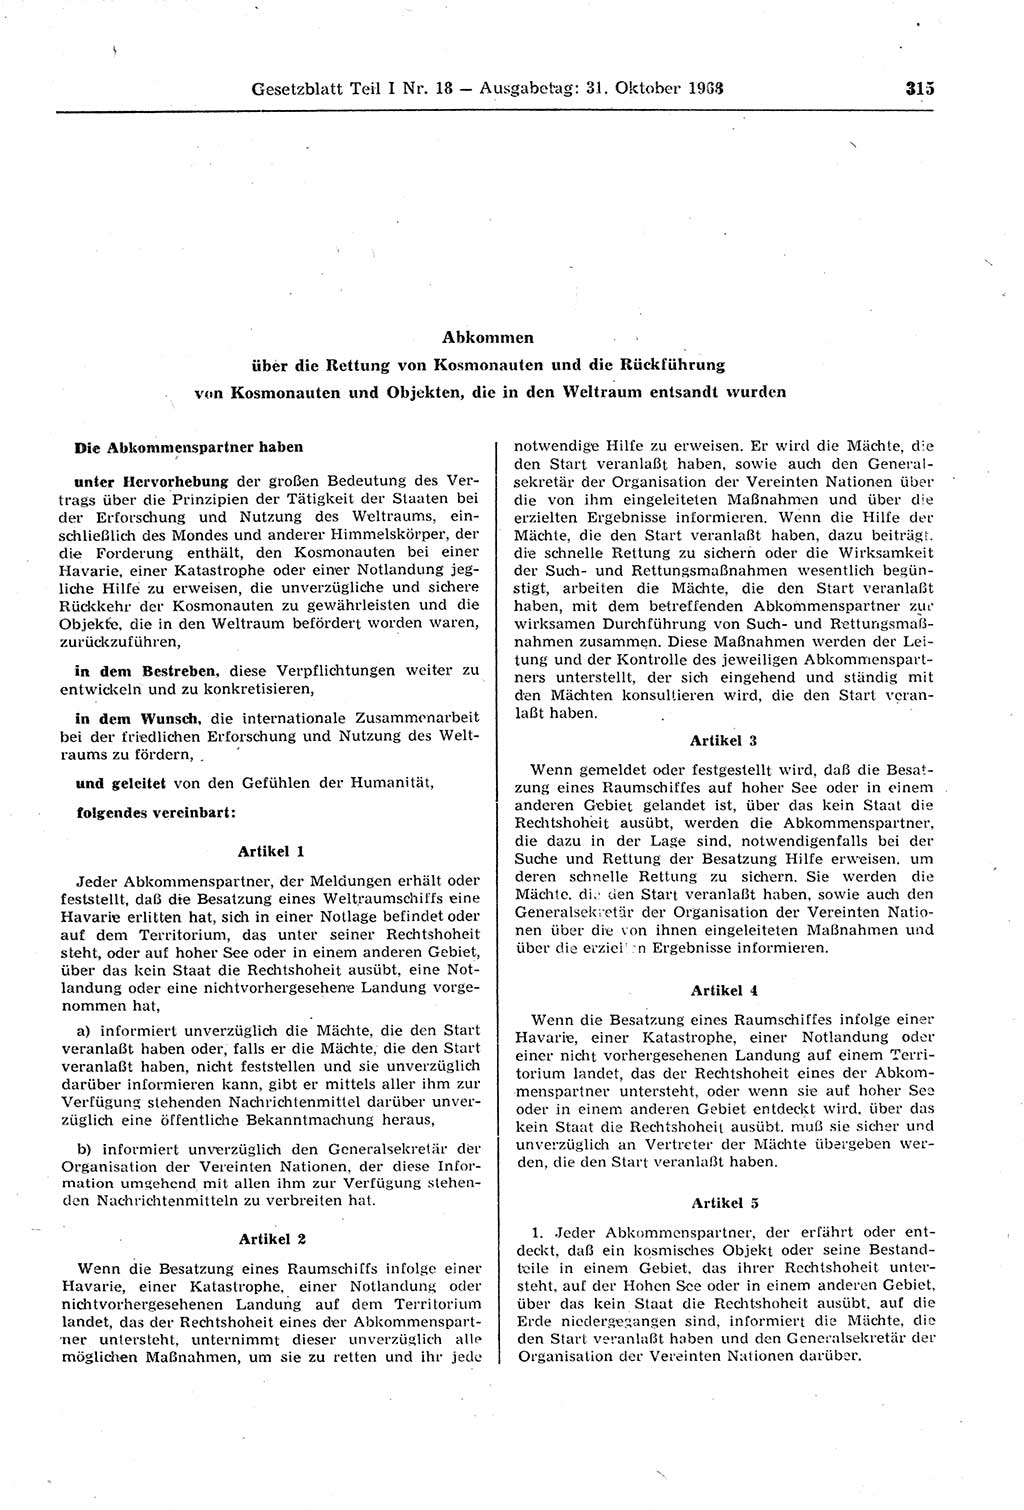 Gesetzblatt (GBl.) der Deutschen Demokratischen Republik (DDR) Teil Ⅰ 1968, Seite 315 (GBl. DDR Ⅰ 1968, S. 315)